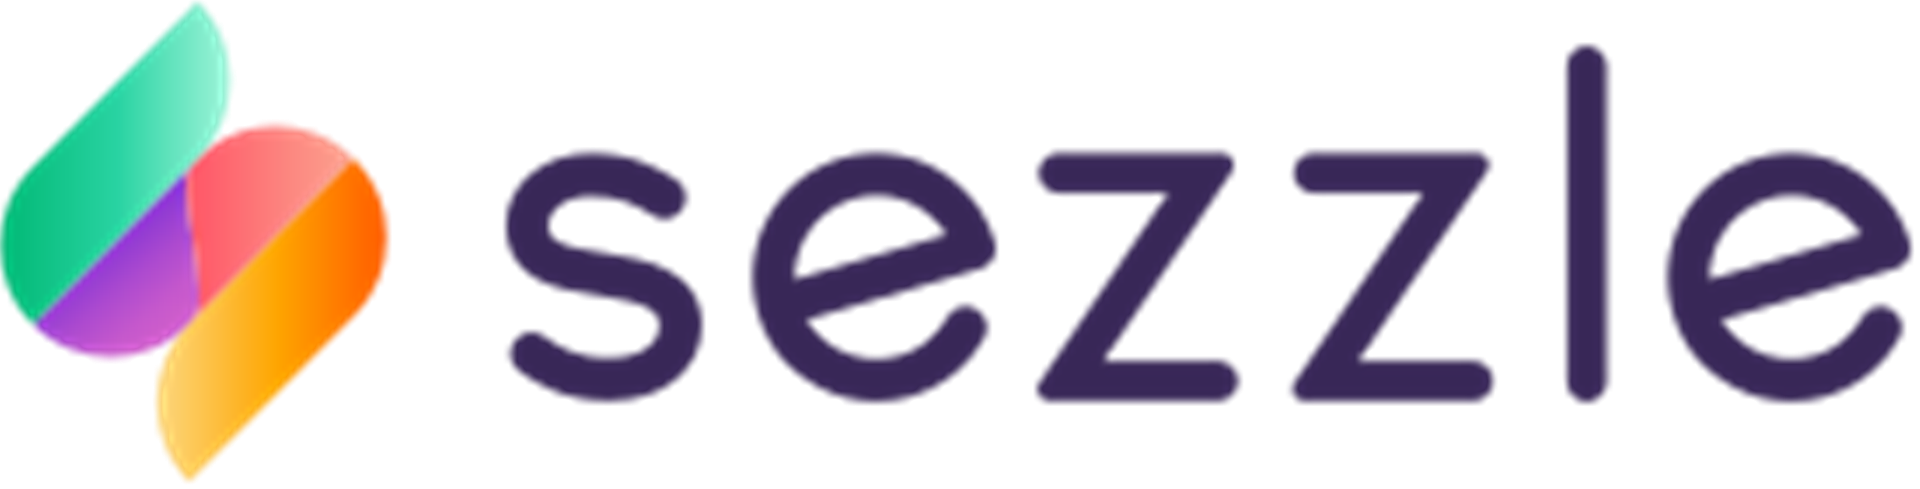 sezzle company logo